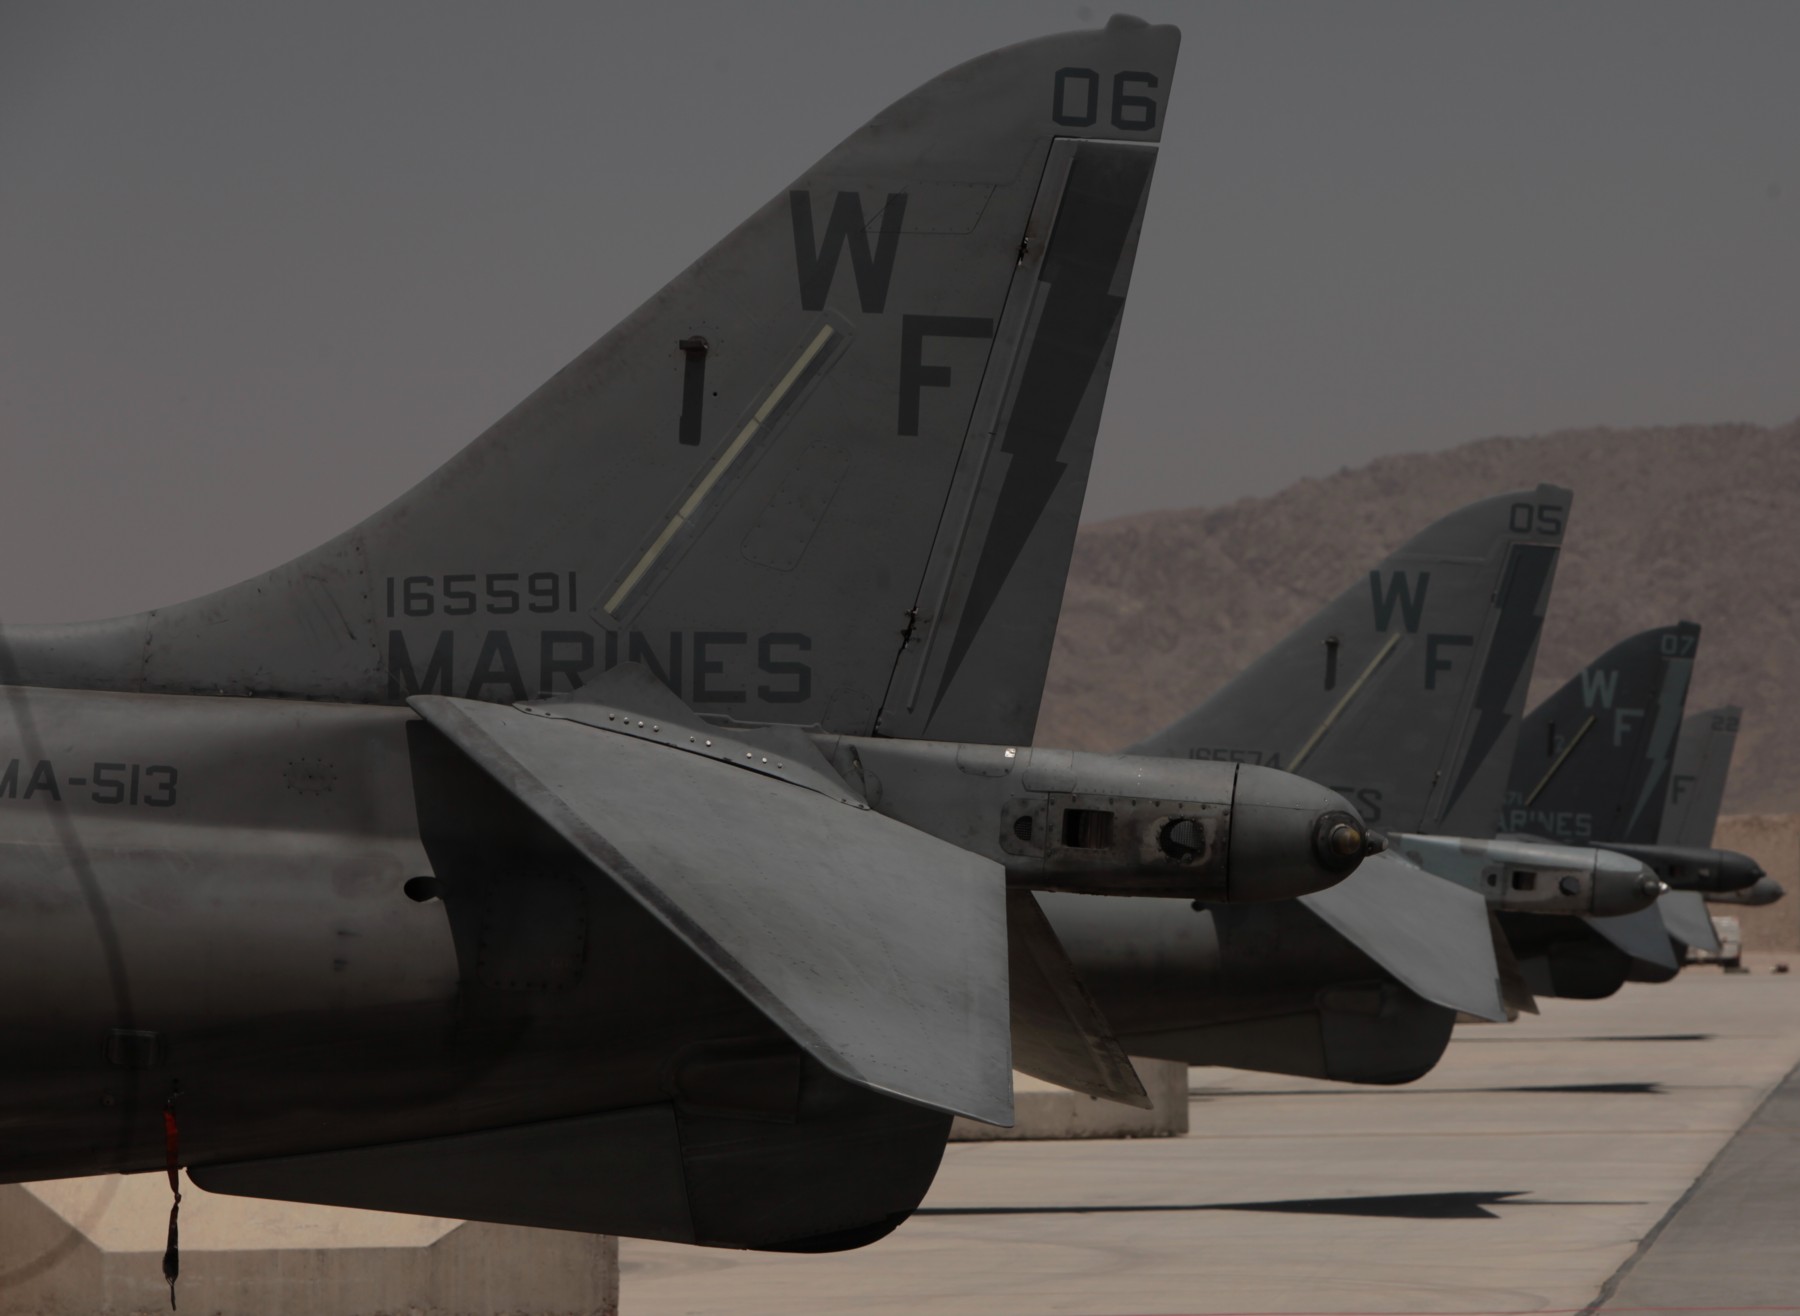 vma-513 flying nightmares av-8b harrier kandahar afghanistan 2011 76